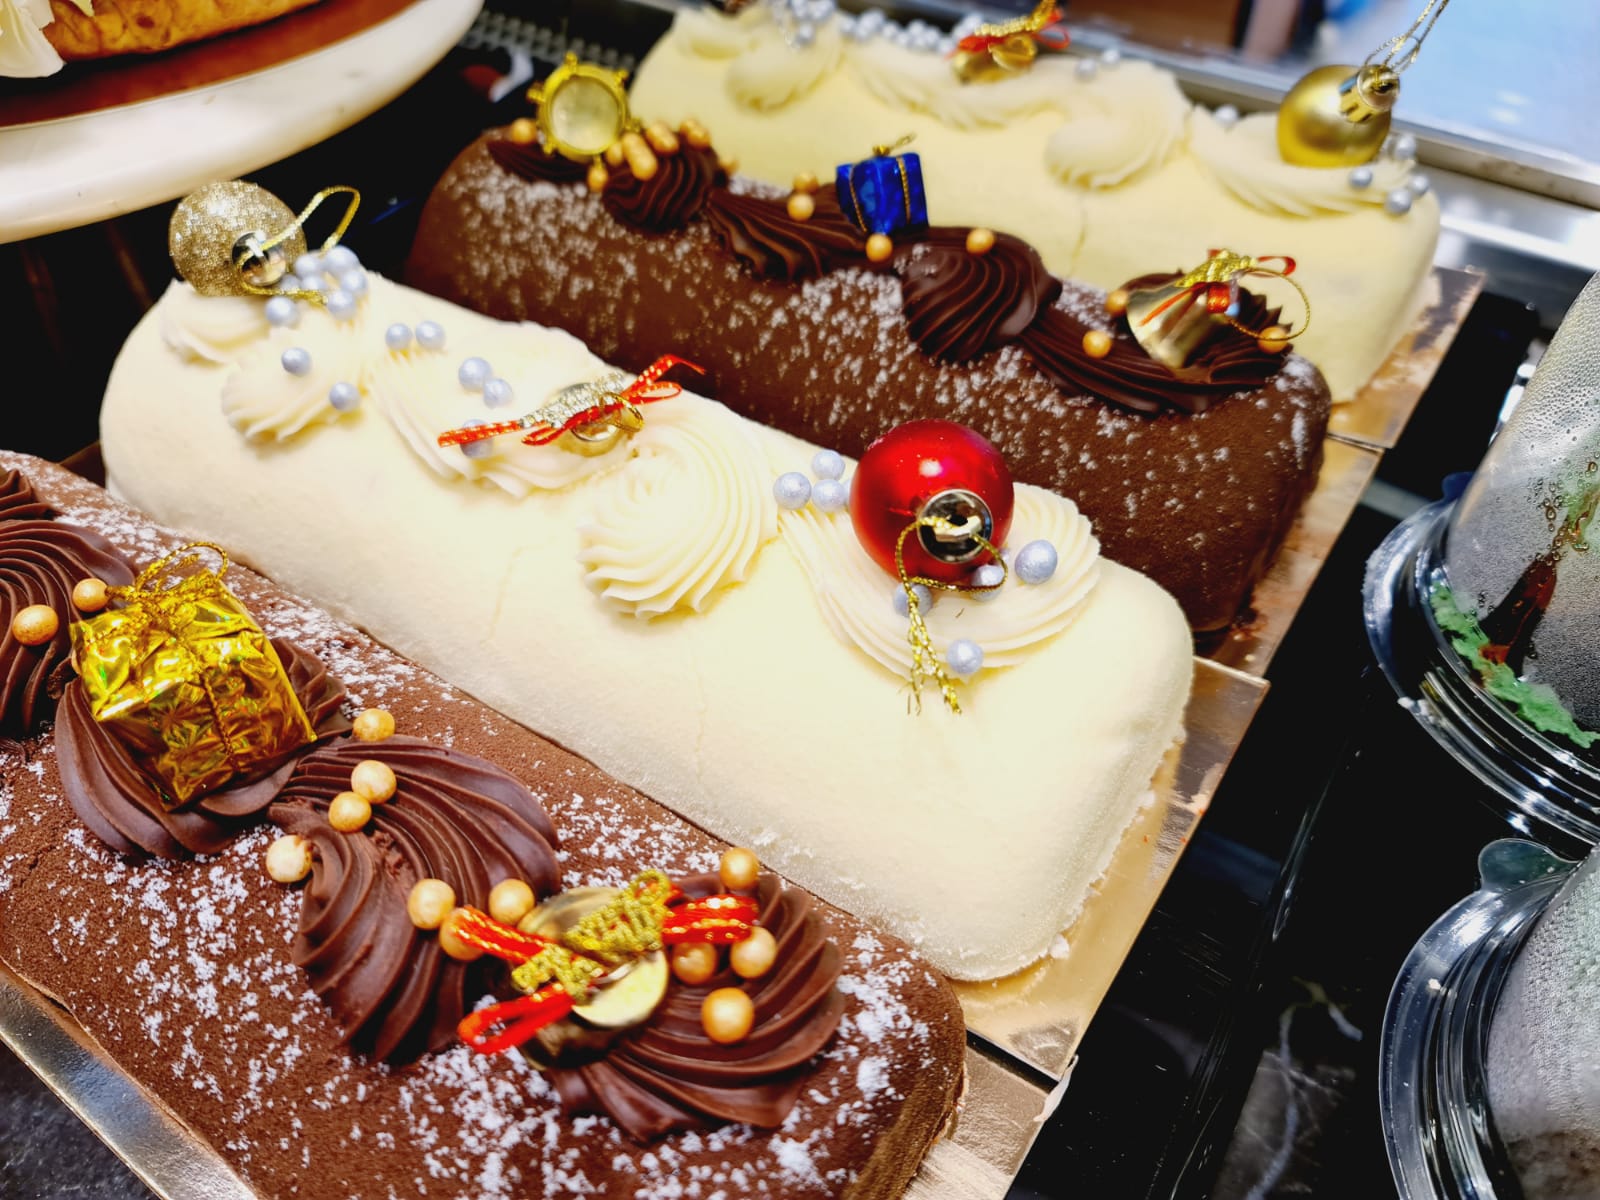  بمناسبة أعياد الميلاد - مقهى تيتو يوّفر لكم أجود أنواع الكيك والشوكولاتة